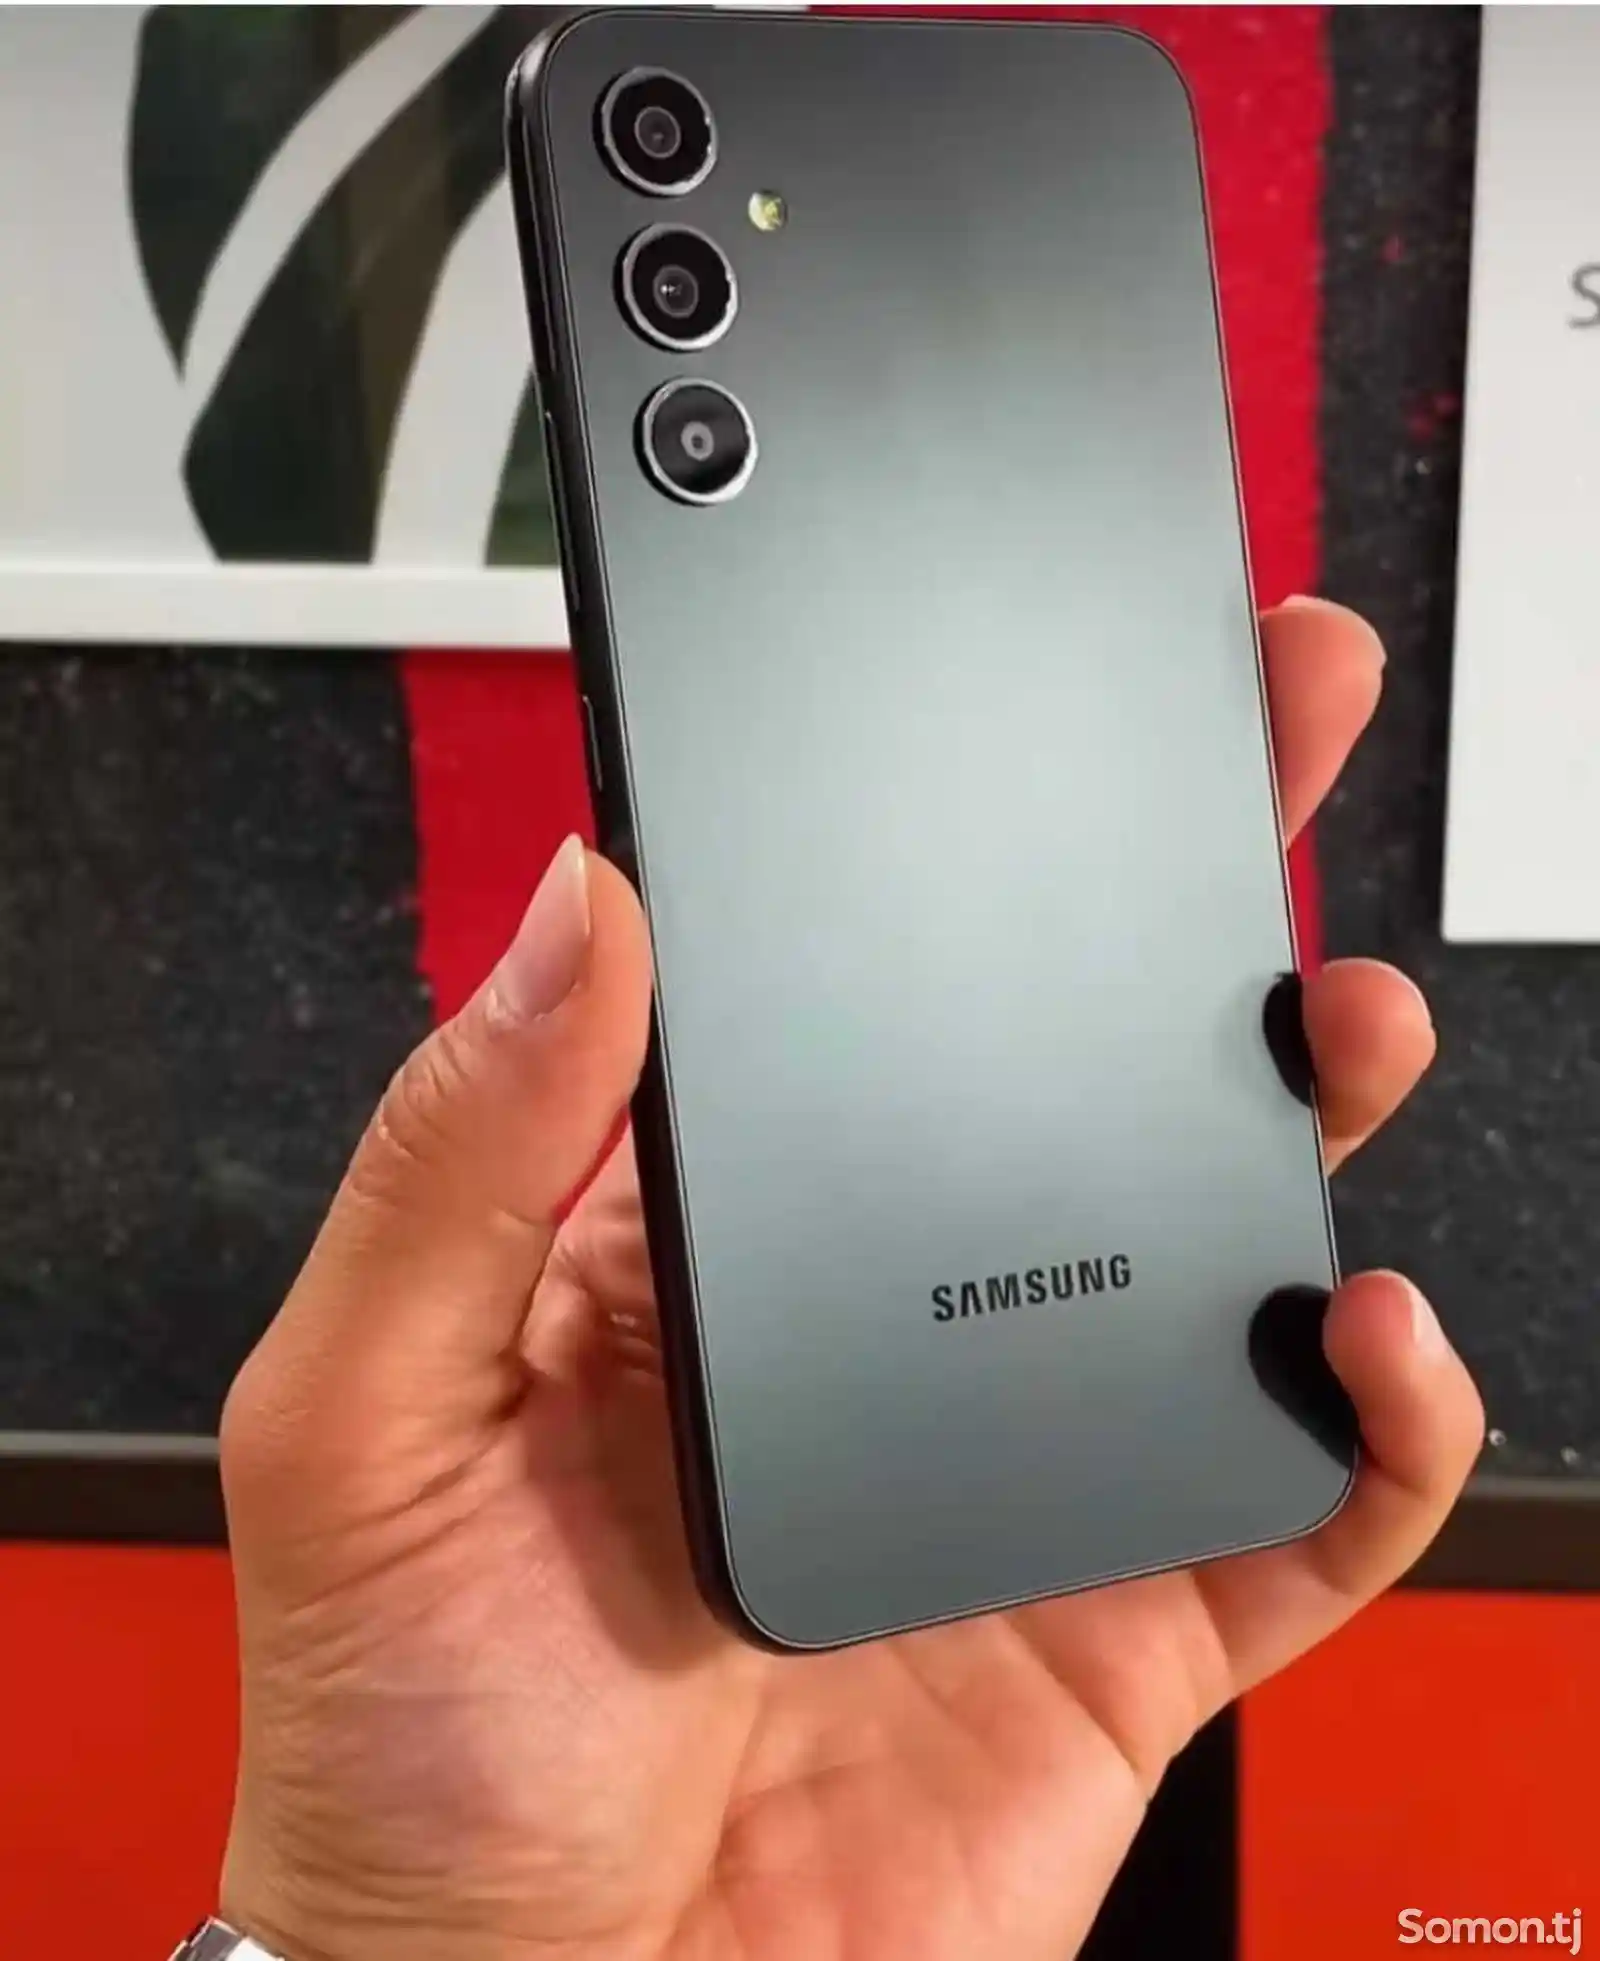 Samsung Galaxy A14-5